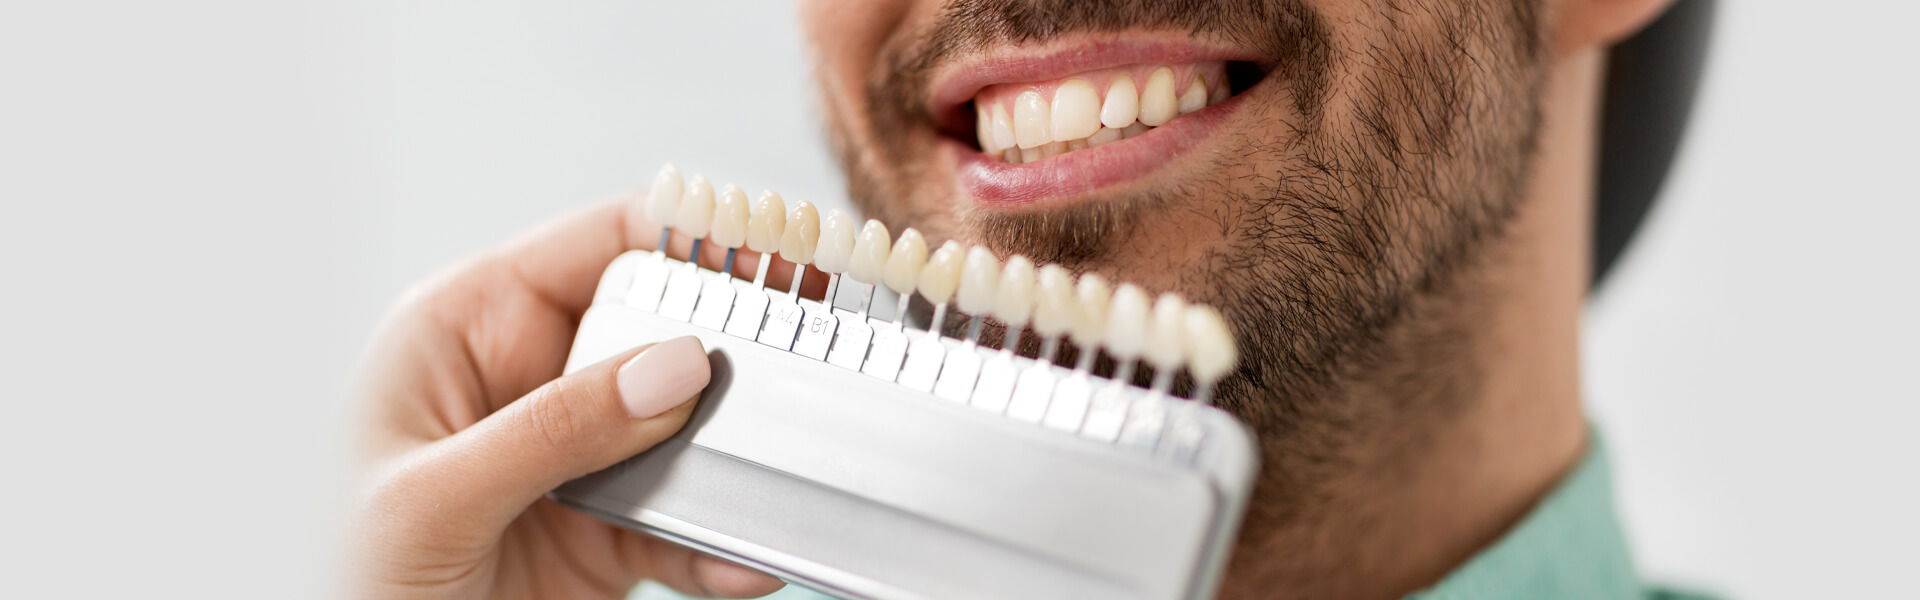 Dental Veneers vs. Implants: Pros and Cons